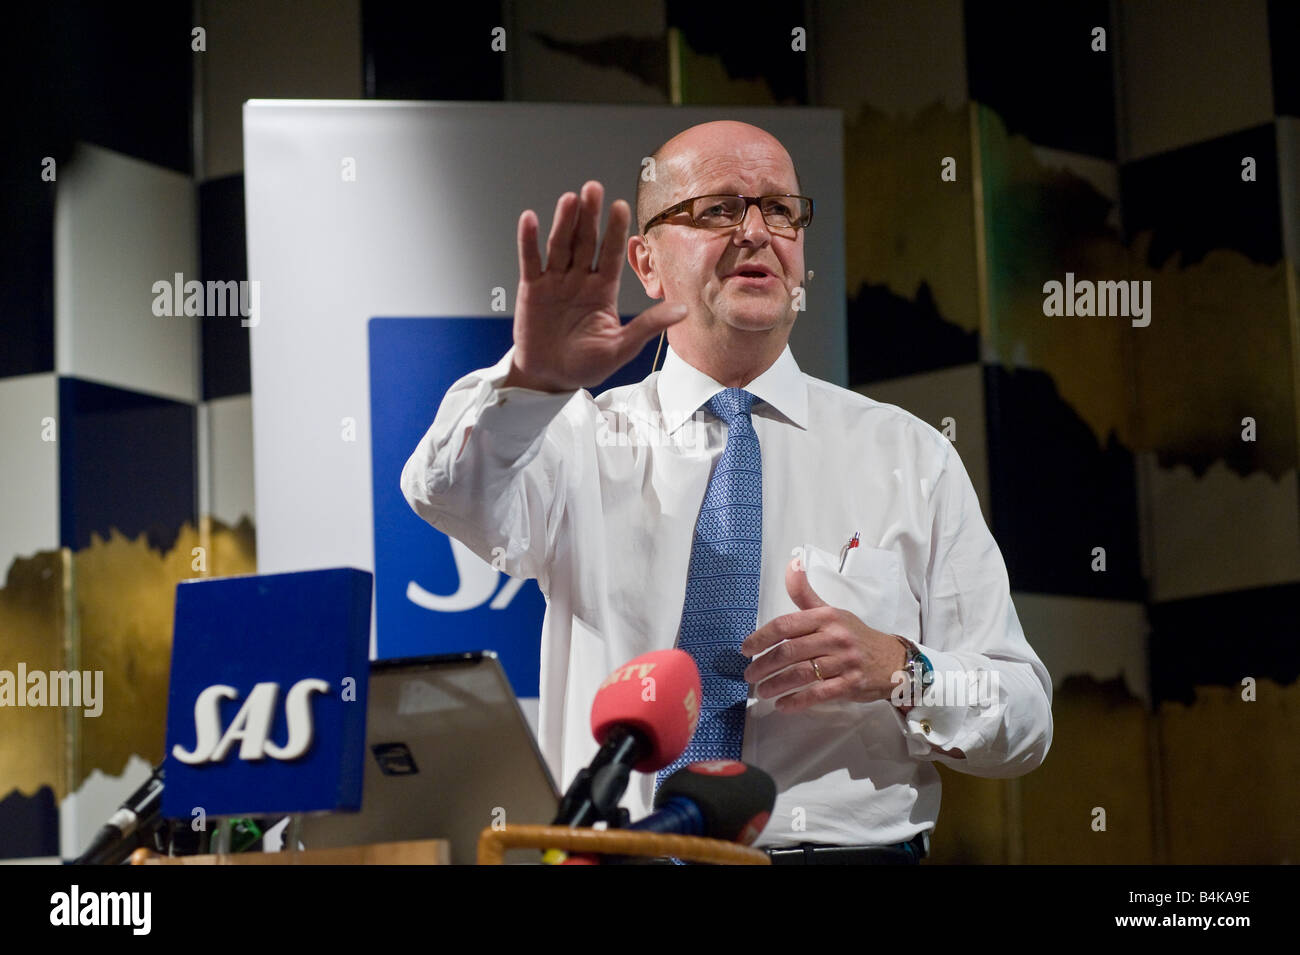 Chef Mats Jansson à la conférence de presse Commentaires sur le rapport annuel de la compagnie aérienne SAS Banque D'Images